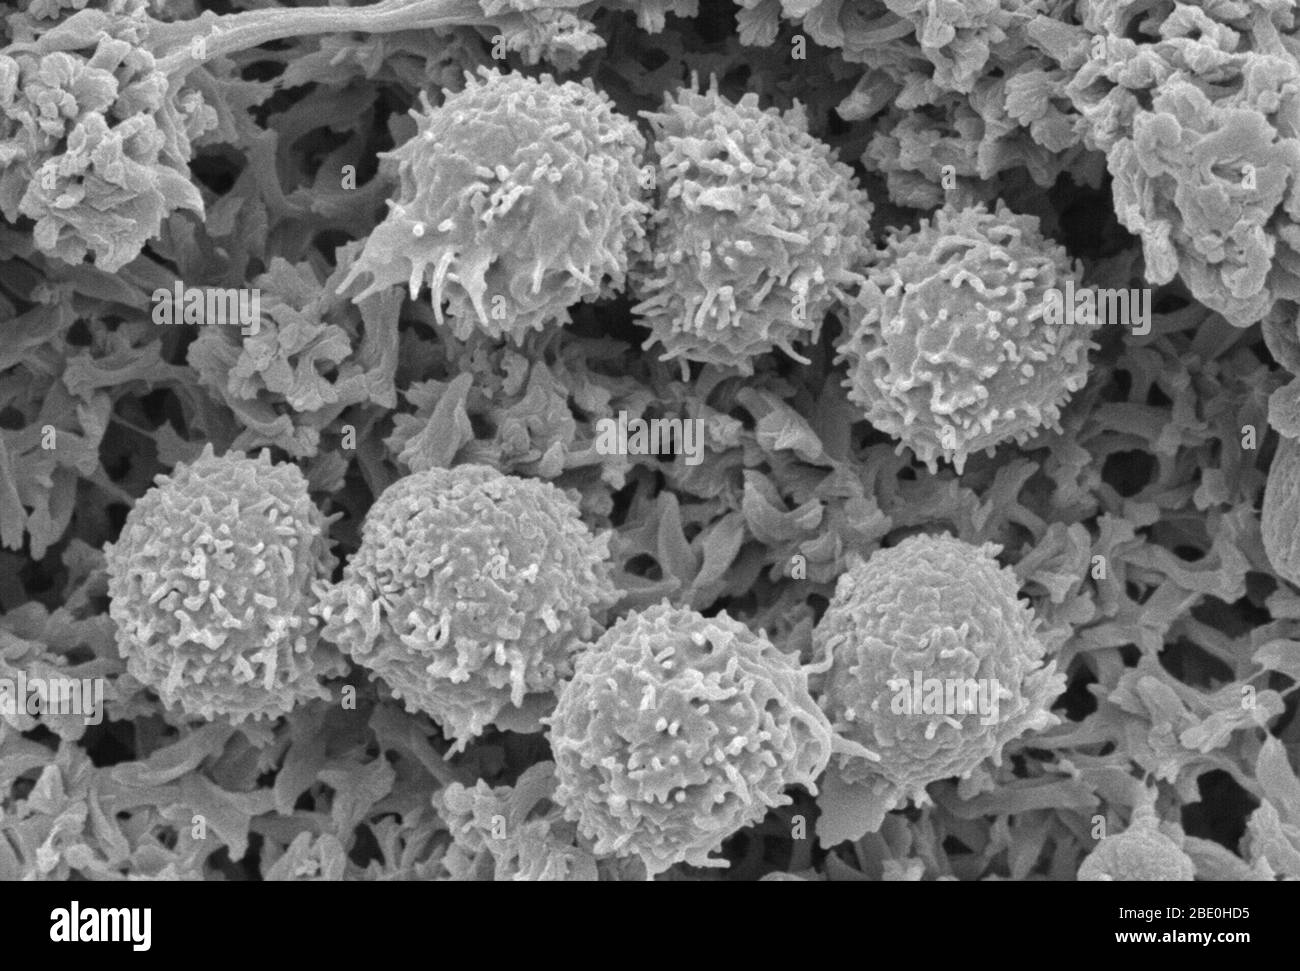 Scanning Electron Micrograph (SEM), der Lymphozyten (weiße Blutkörperchen) zeigt. Eine Lymphozyten ist eine der Unterarten der weißen Blutkörperchen im Immunsystem eines Wirbeltieres. Lymphozyten umfassen natürliche Killerzellen (NK-Zellen) (die in der zellvermittelten, zytotoxisch angeborenen Immunität funktionieren), T-Zellen (für zellvermittelte, zytotoxische adaptive Immunität) und B-Zellen (für humorale, Antikörper-getriebene adaptive Immunität). Sie sind der Haupttyp der Zelle in der Lymphe gefunden, die den Namen Lymphozyten aufgefordert. Vergrößerung unbekannt. Stockfoto